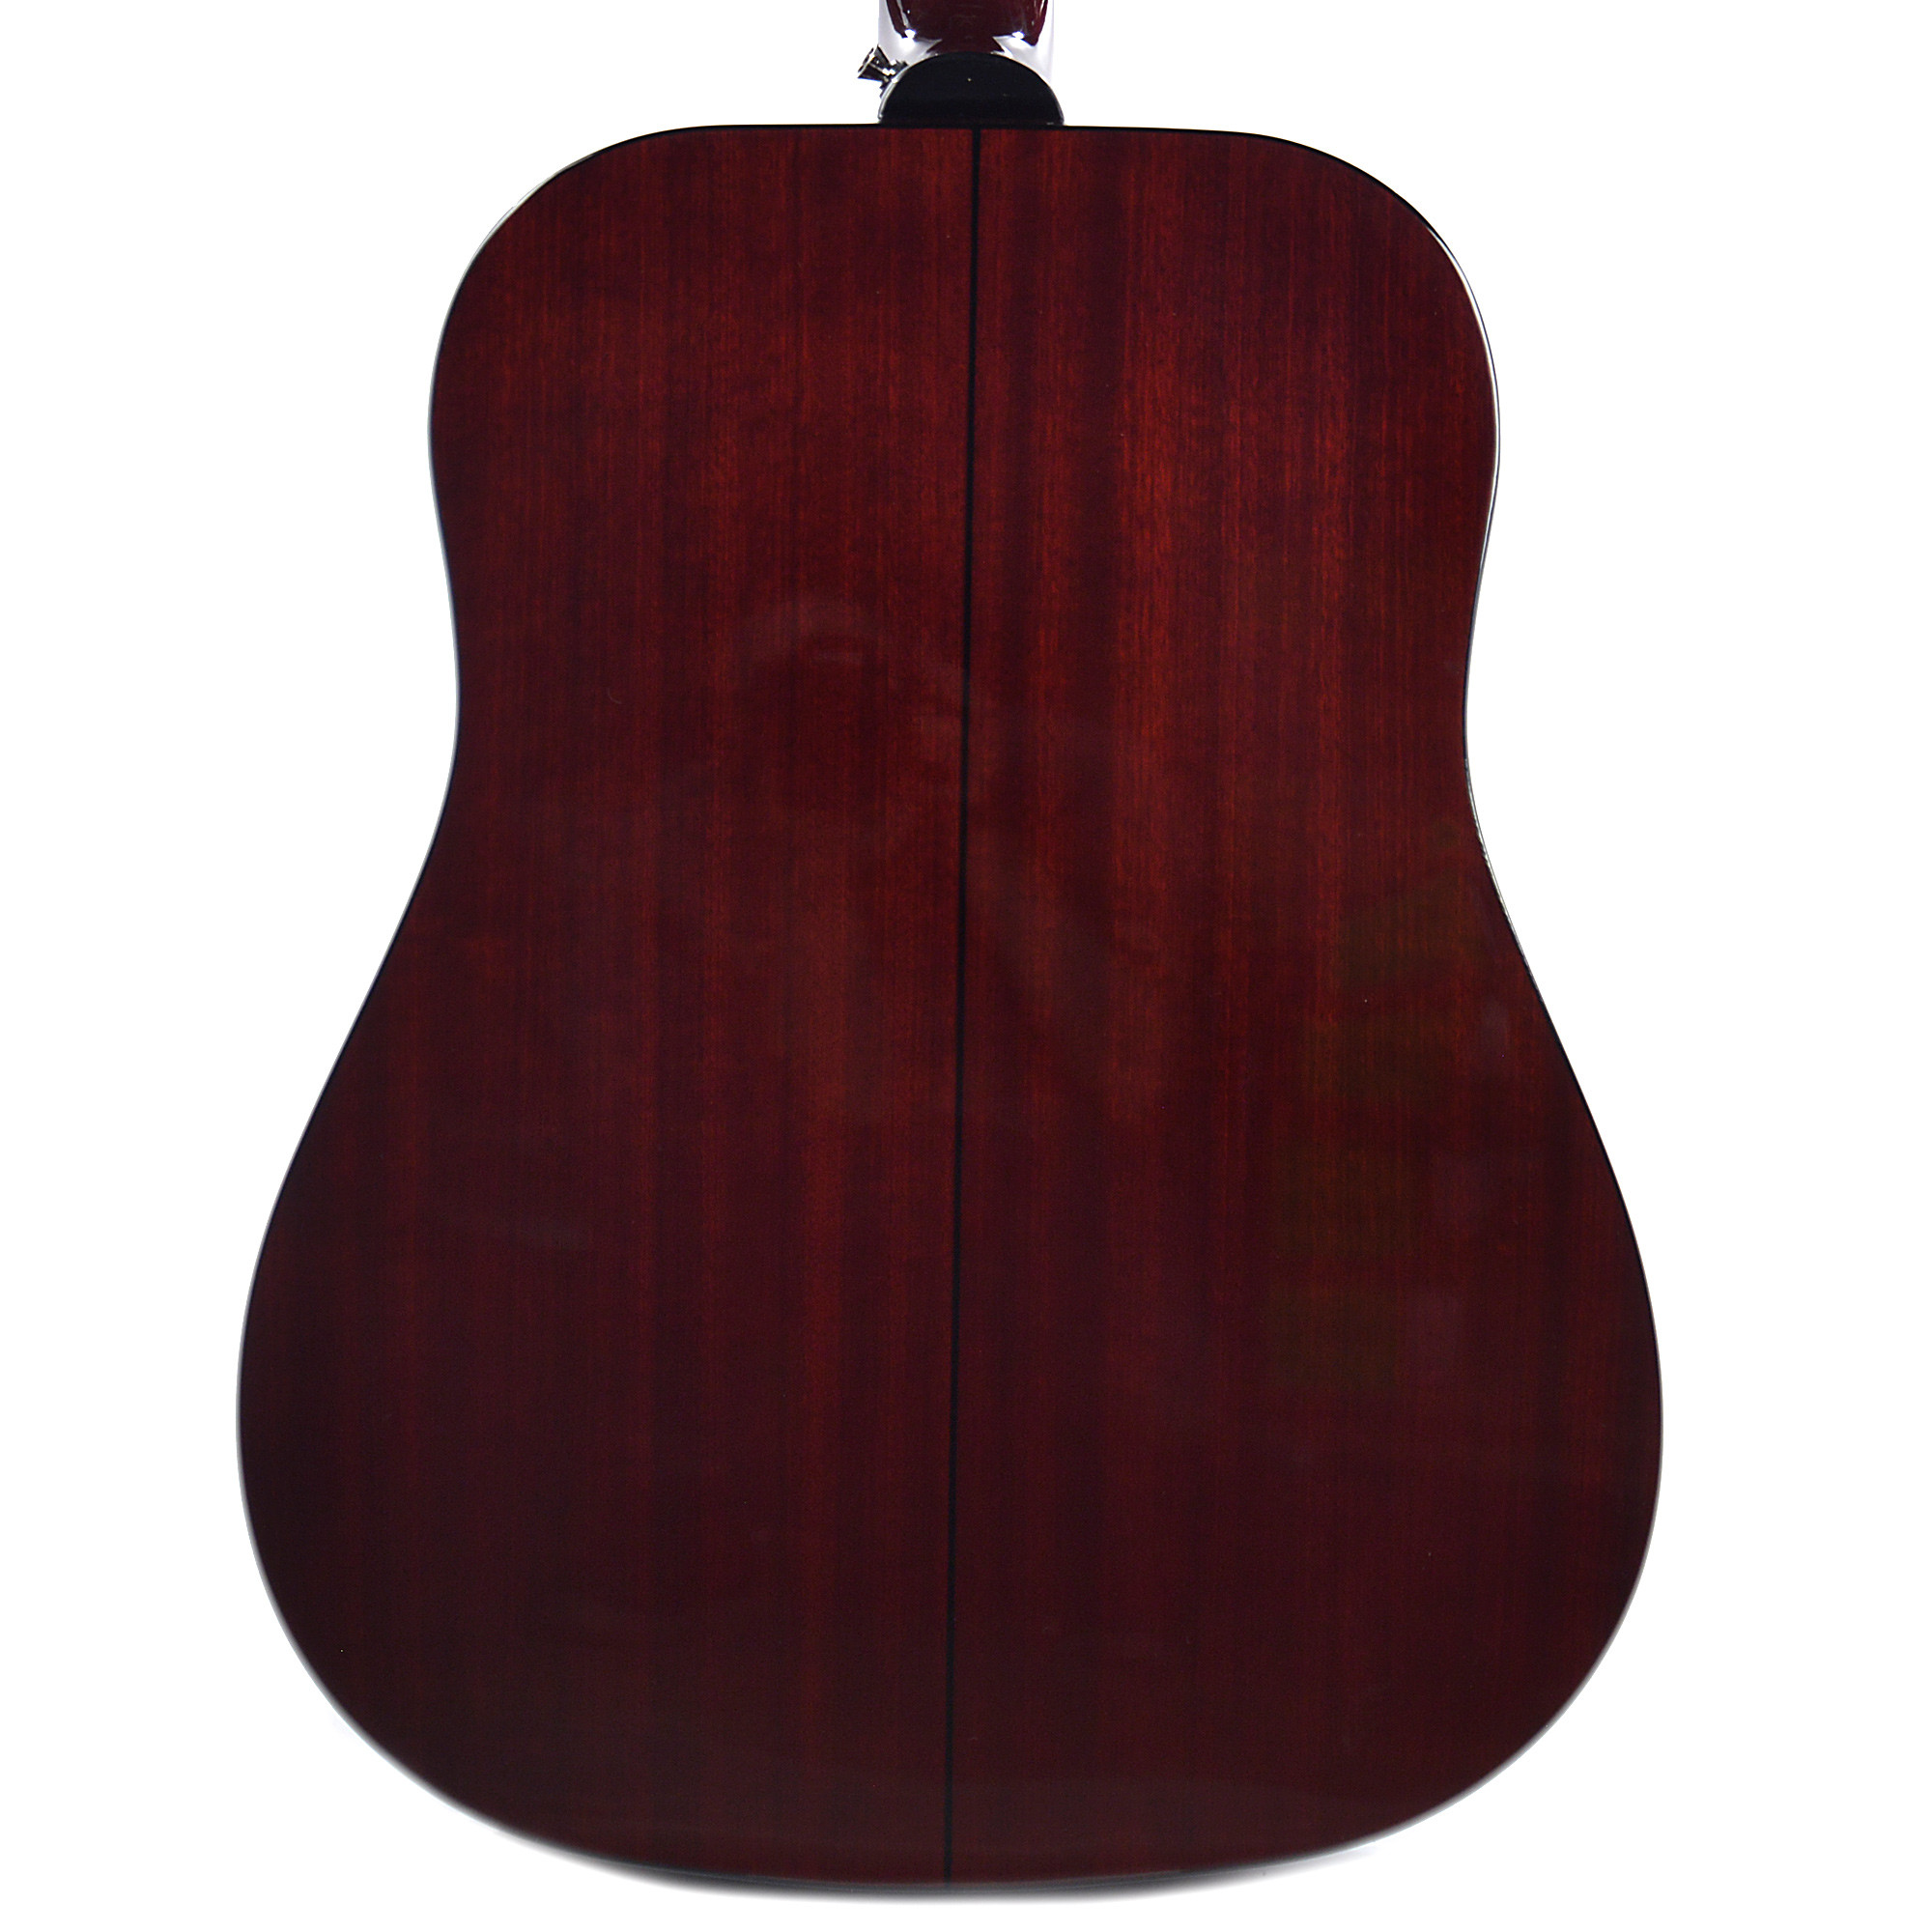 Epiphone Pro-1 Plus Acoustic Dreadnought Epicea Acajou - Wine Red - Guitare Acoustique - Variation 2